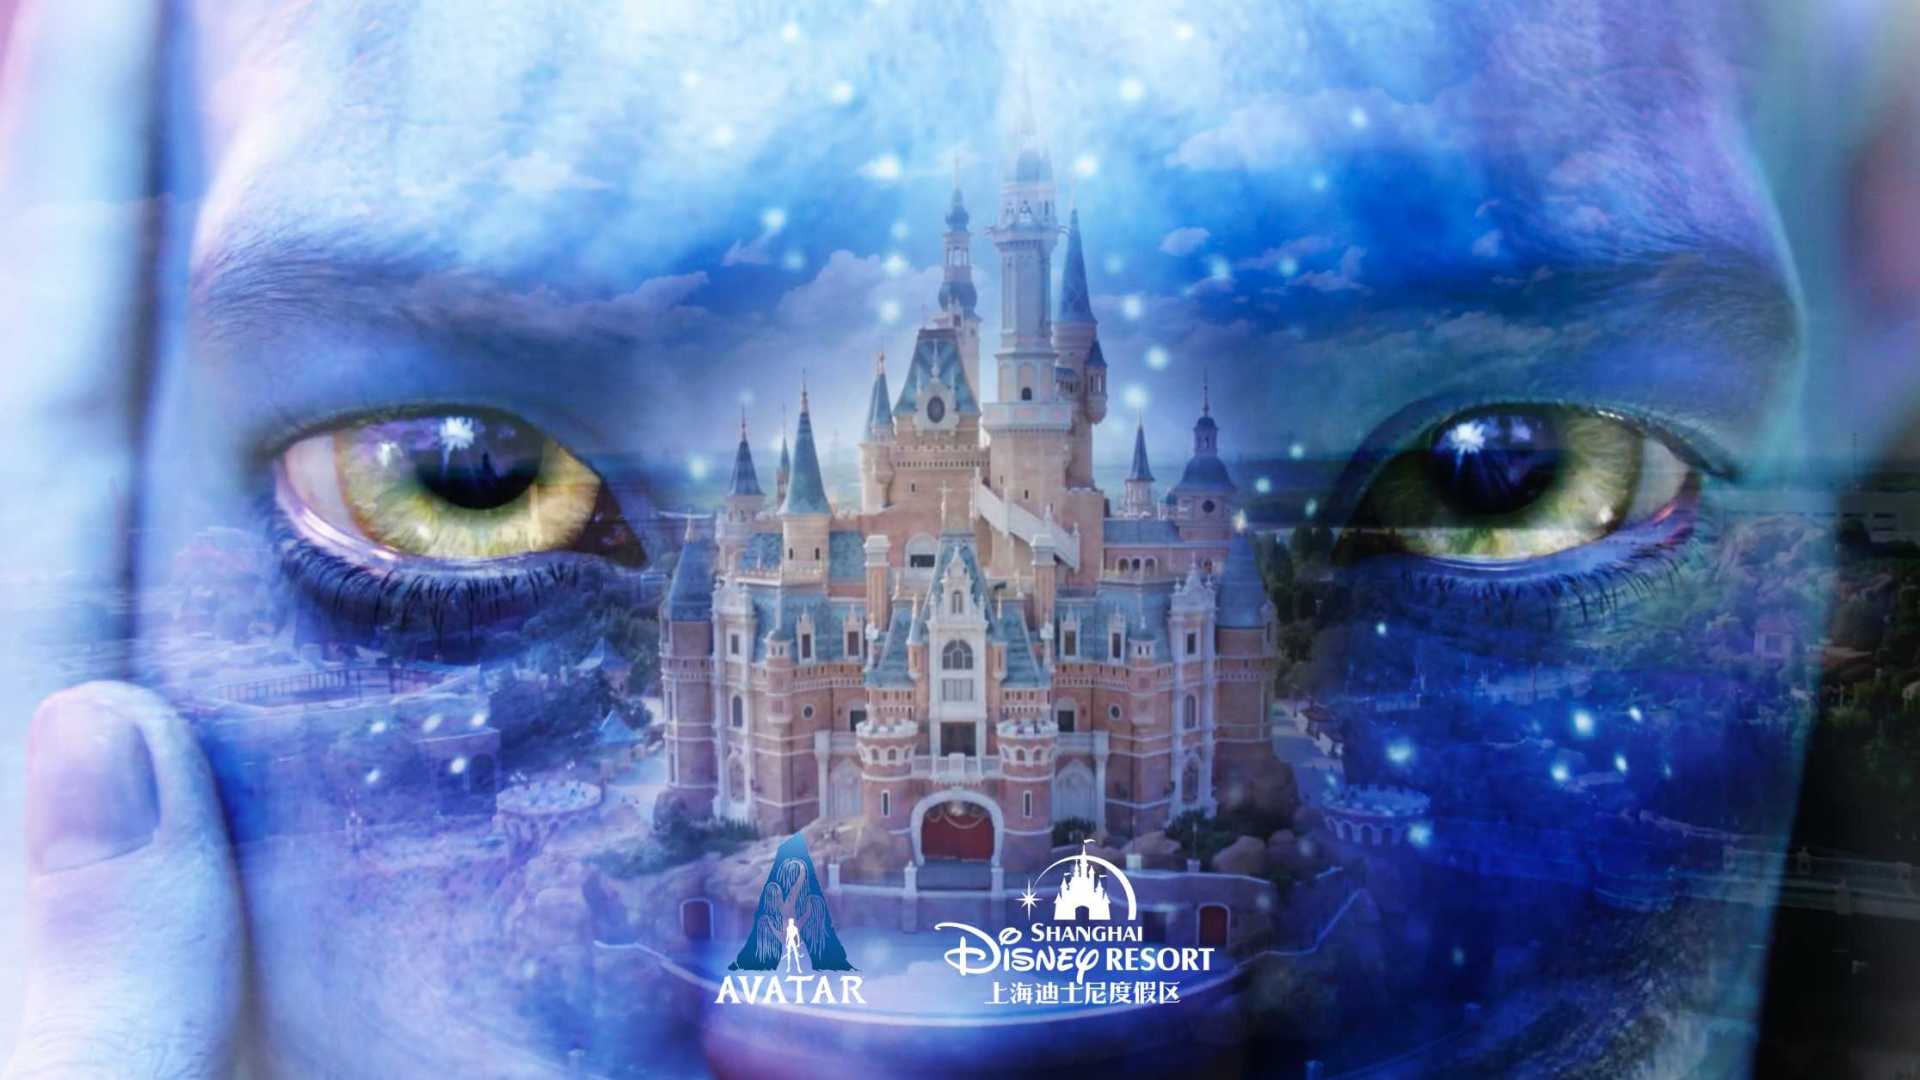 Disney｜ Avatar  明日世界展馆